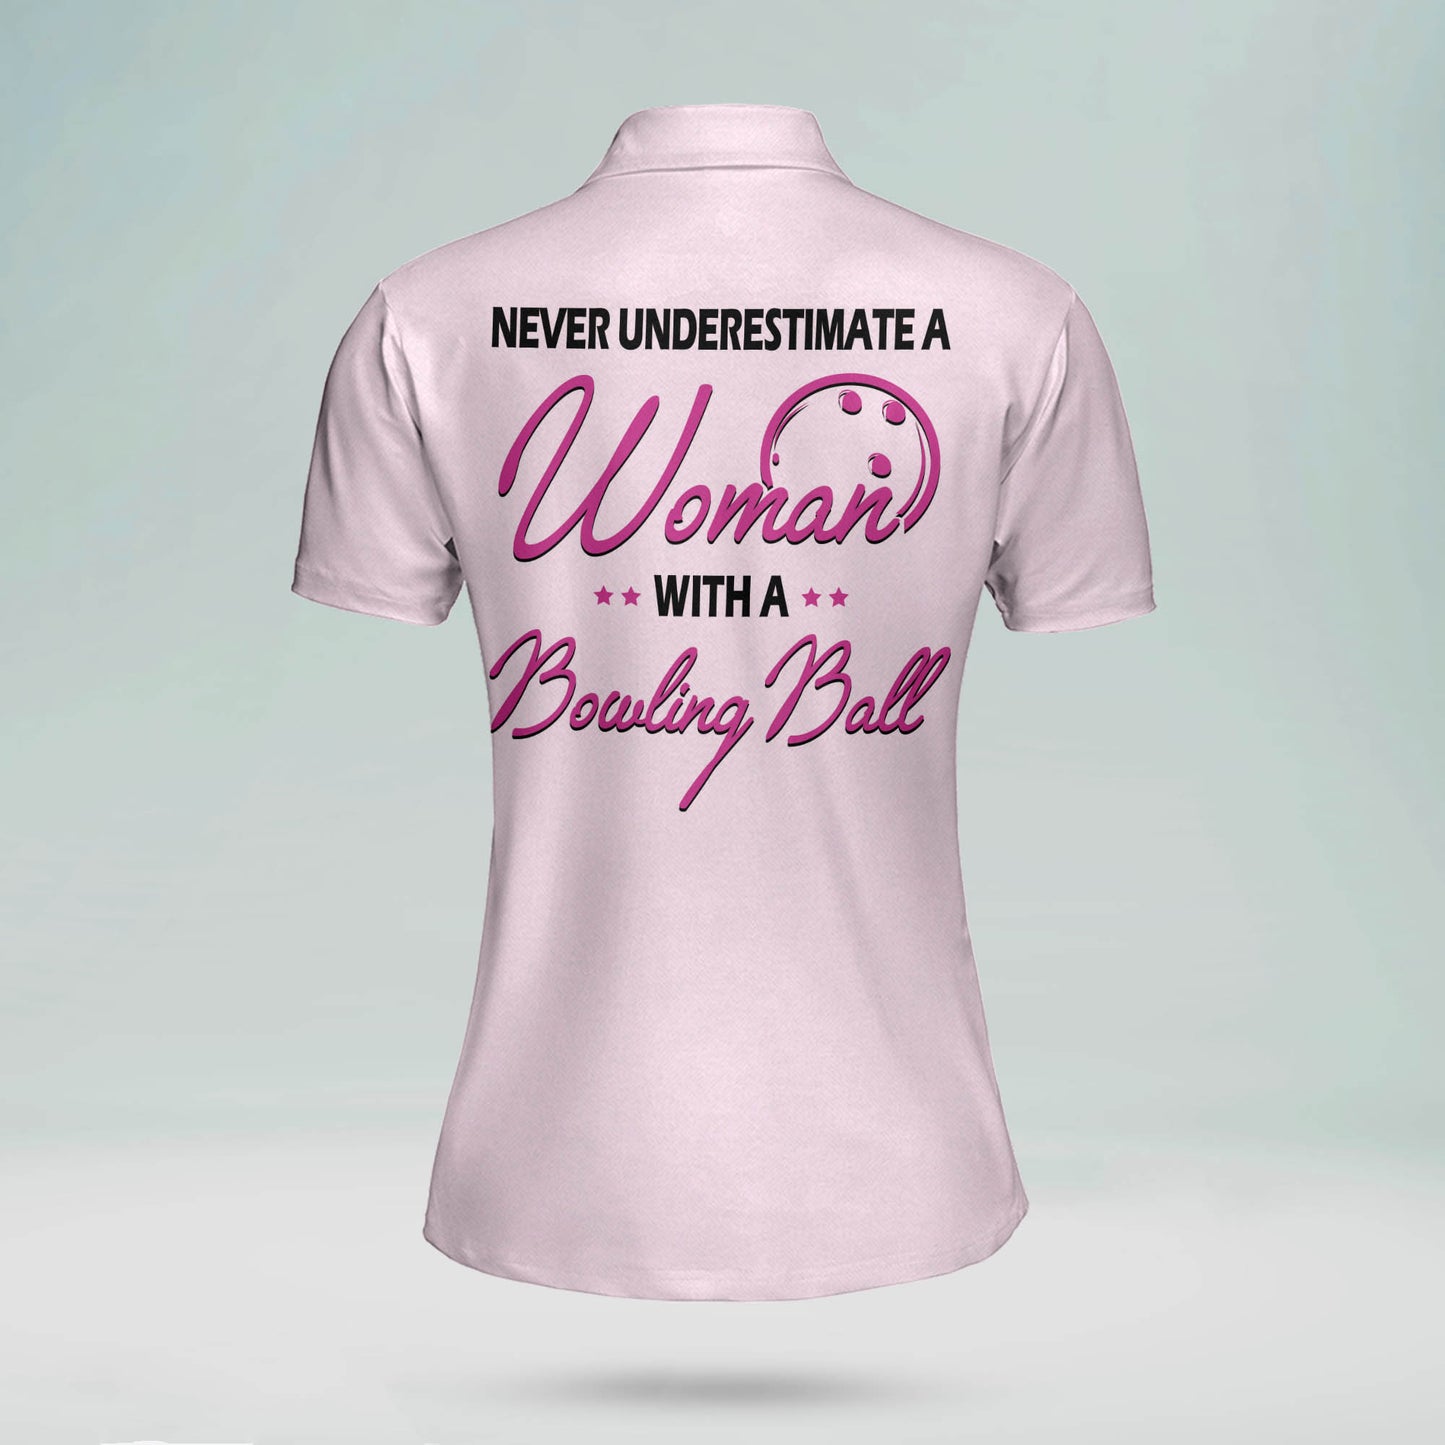 Custom Bowling Shirts For Women - Funny Bowling Shirts Womens - Bowling Shirt Designs Custom - Pink Bowling Shirts Womens - Cute Bowling Polo Shirts BW0045